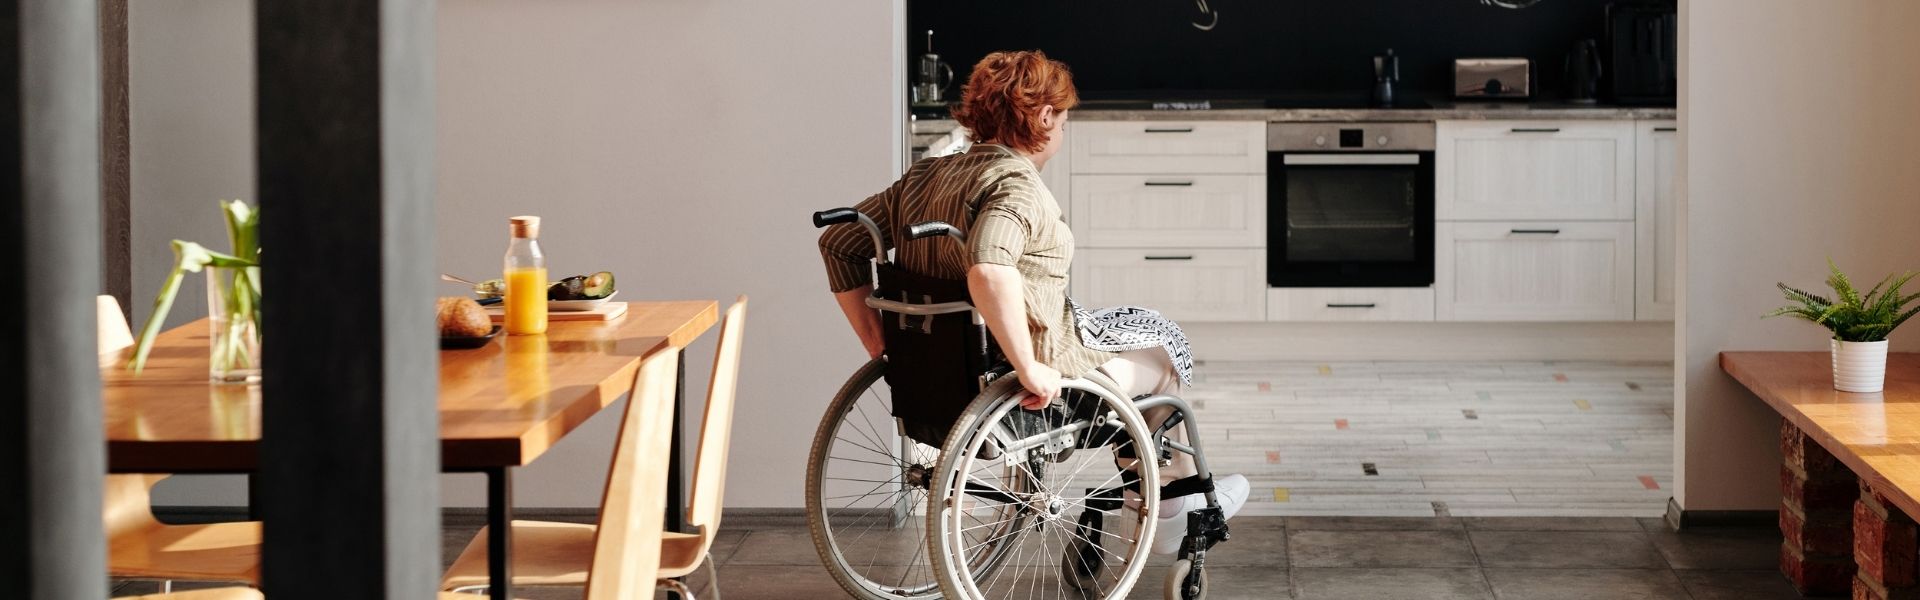 woman in wheelchair in kitchen